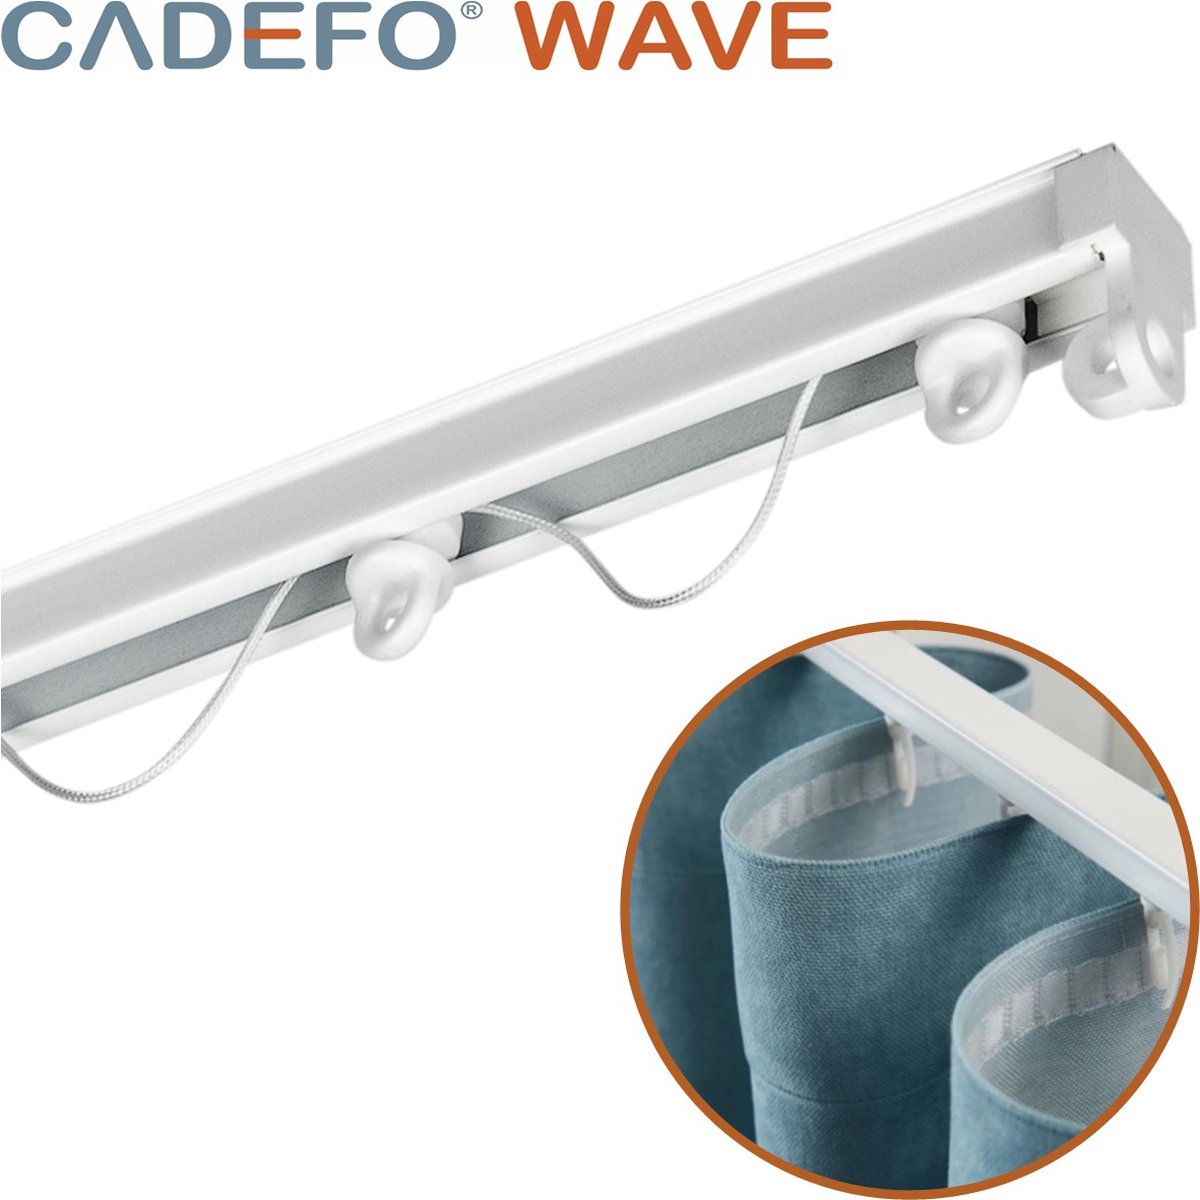 CADEFO WAVE (351 - 400 cm) Gordijnrails - Compleet op maat! - UIT 1 STUK - Leverbaar tot 6 meter - Plafondbevestiging - Lengte 356 cm